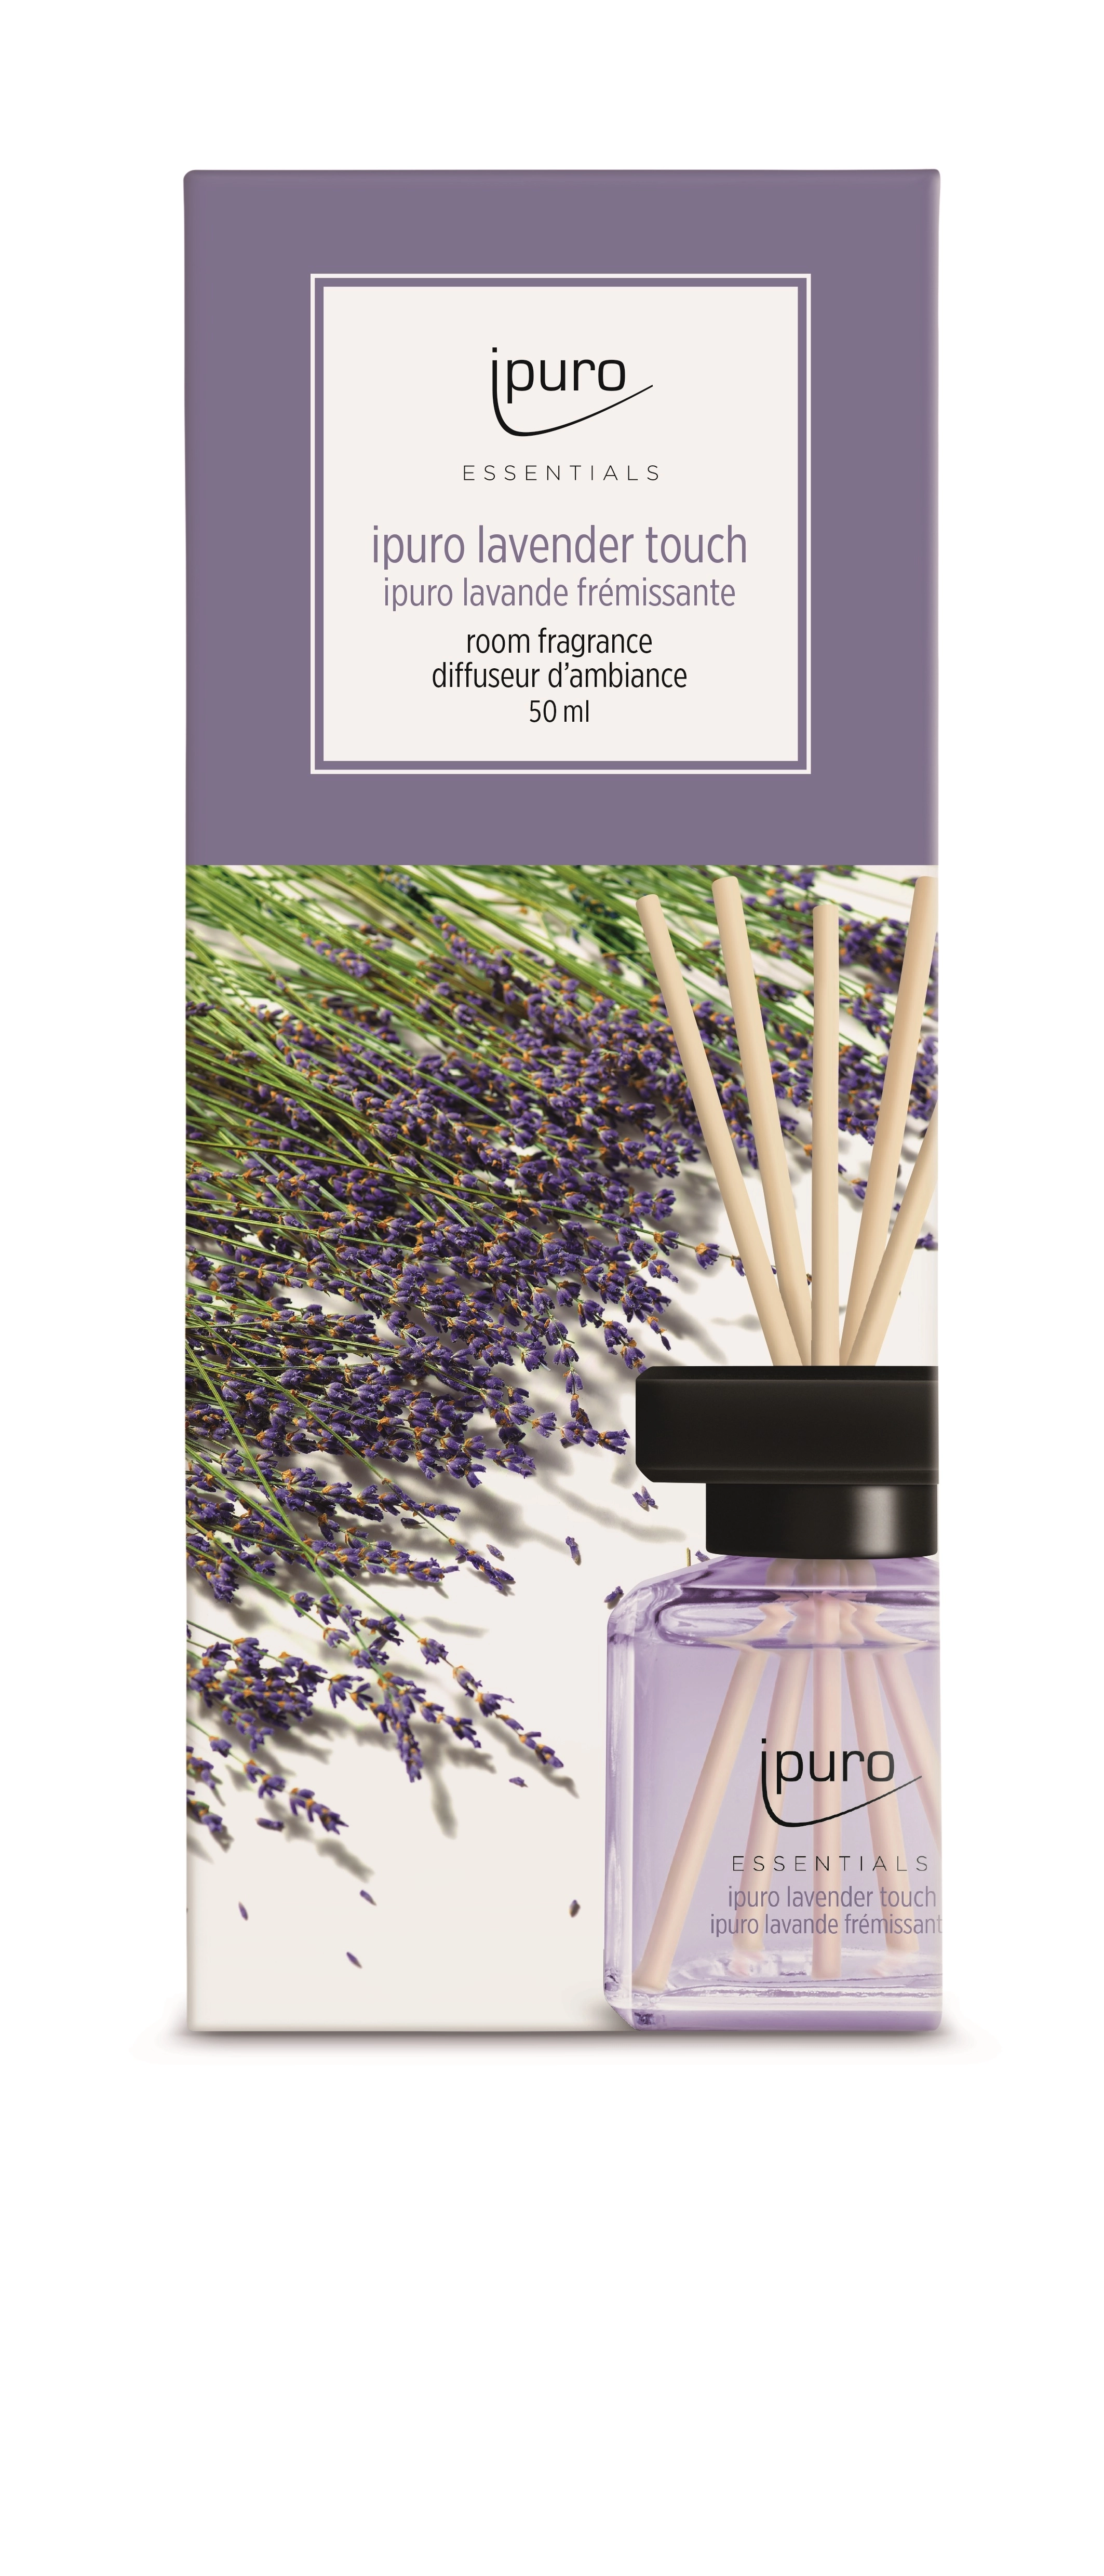 ipuro Autoduft Essantials Lavender Touch 1 ml kaufen bei OBI